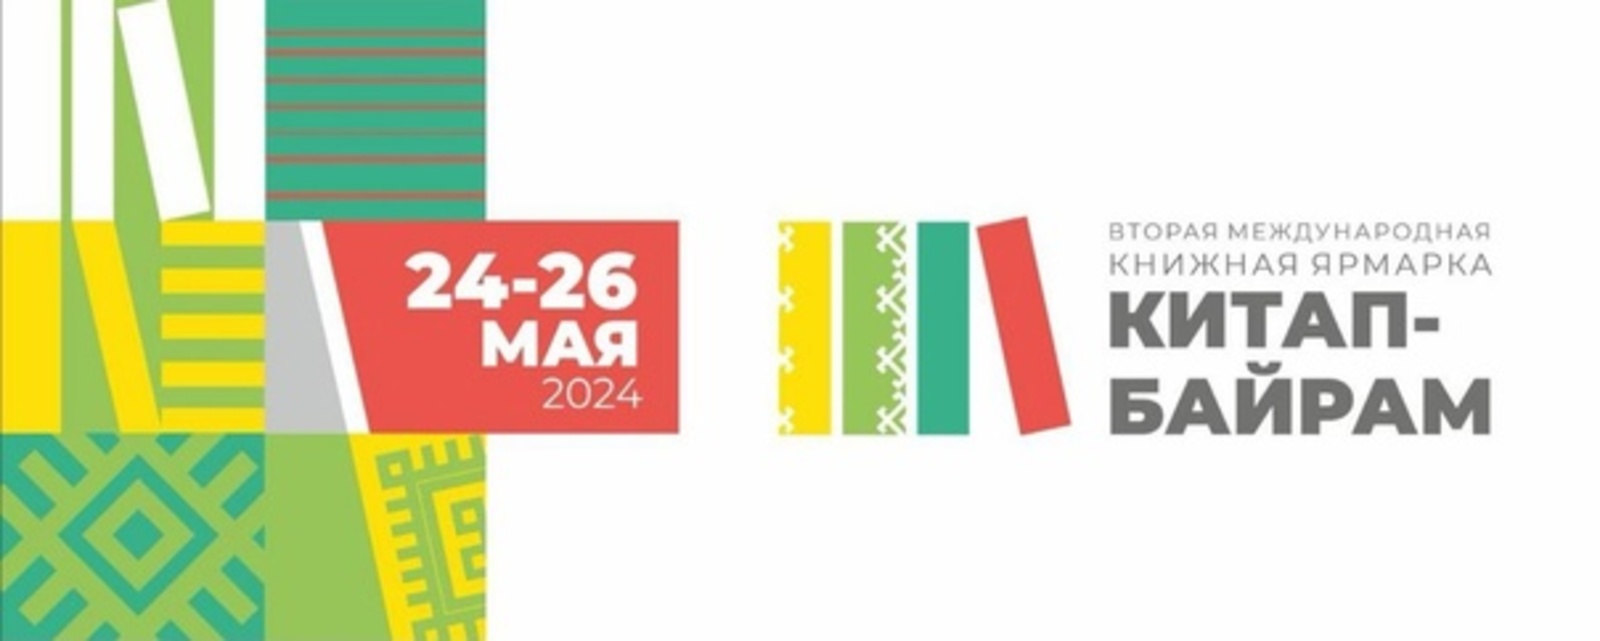 В Уфе во второй раз пройдёт Международная книжная ярмарка «Китап-Байрам»